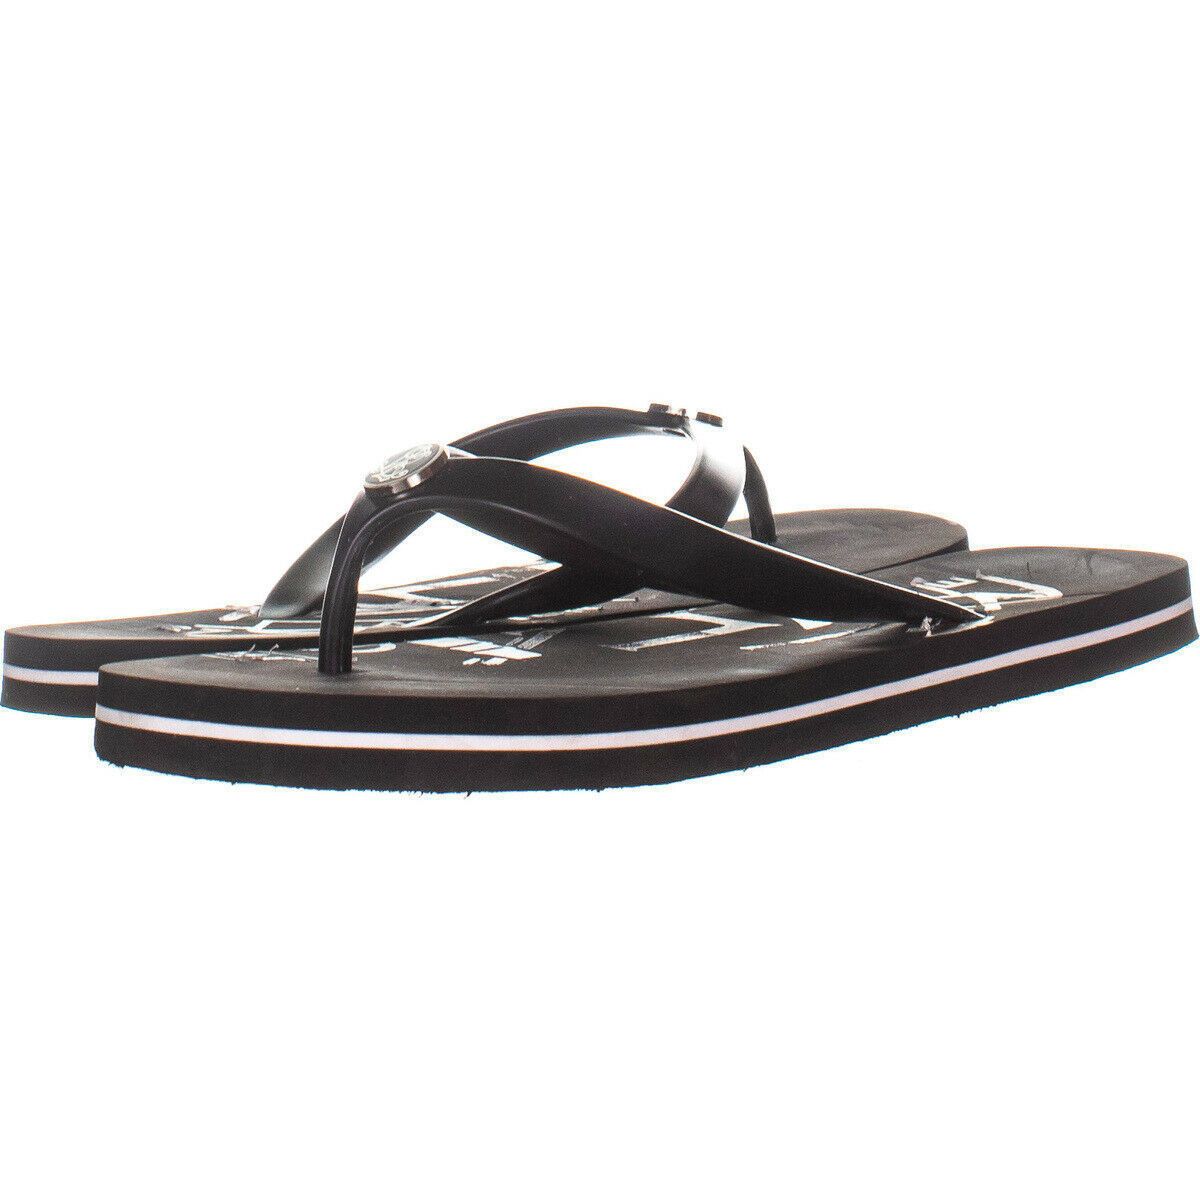 Lauren by Ralph Lauren 253 Flat Flip Flop Sandals 000, Black, 9 US ...